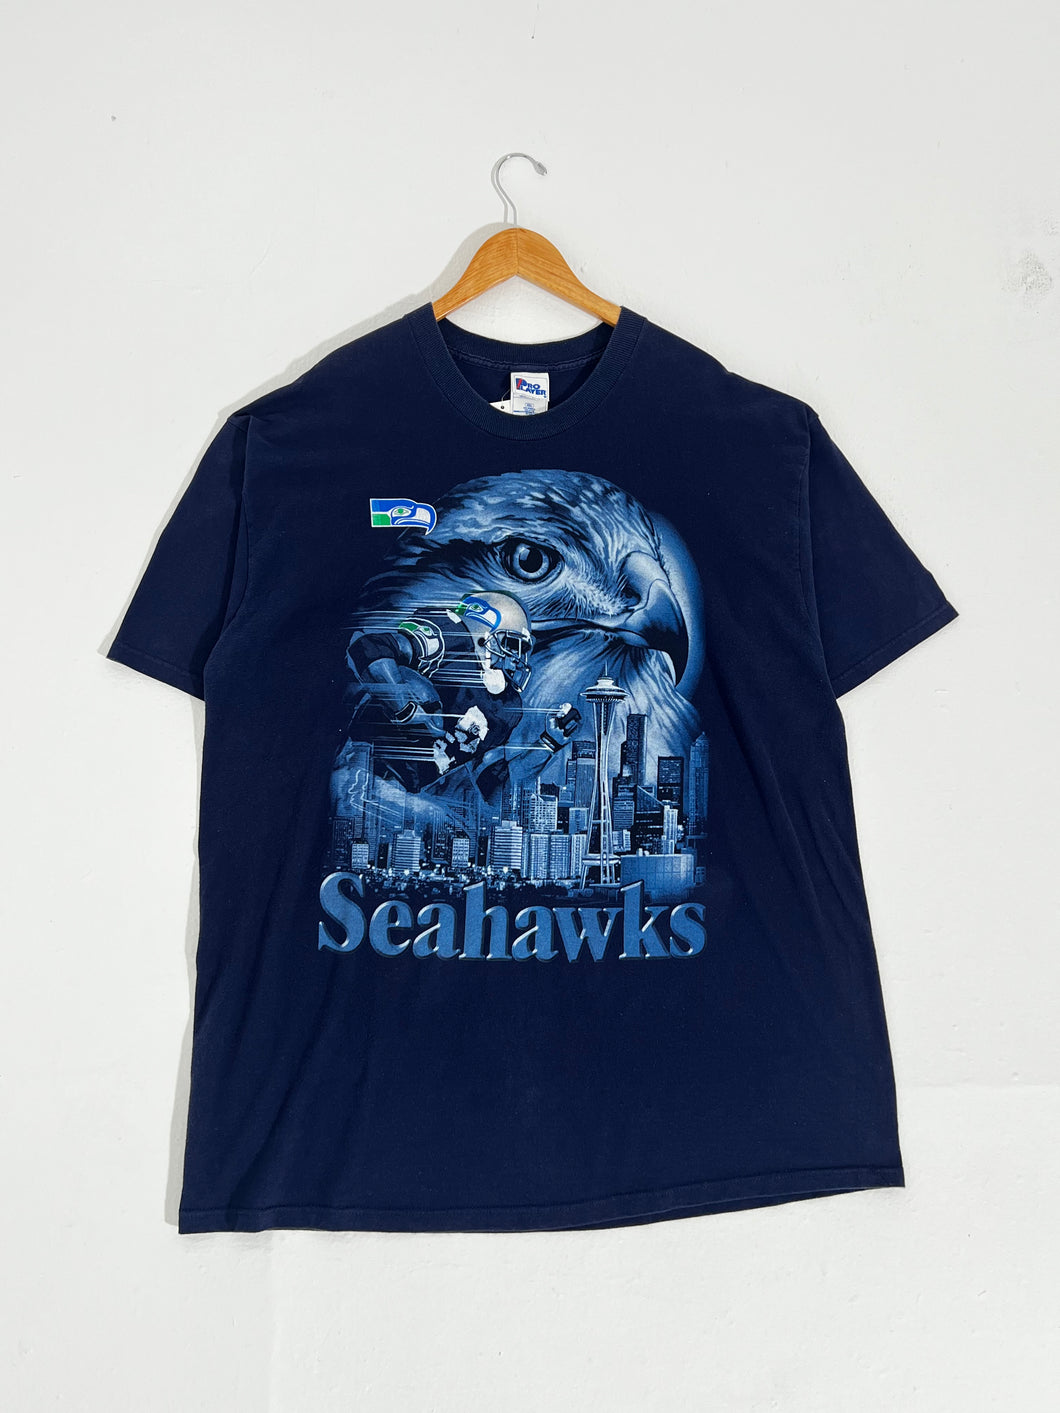 Vintage 1990s NFL Seattle Seahawks Graphic Pro Player T-Shirt Sz. 2XL